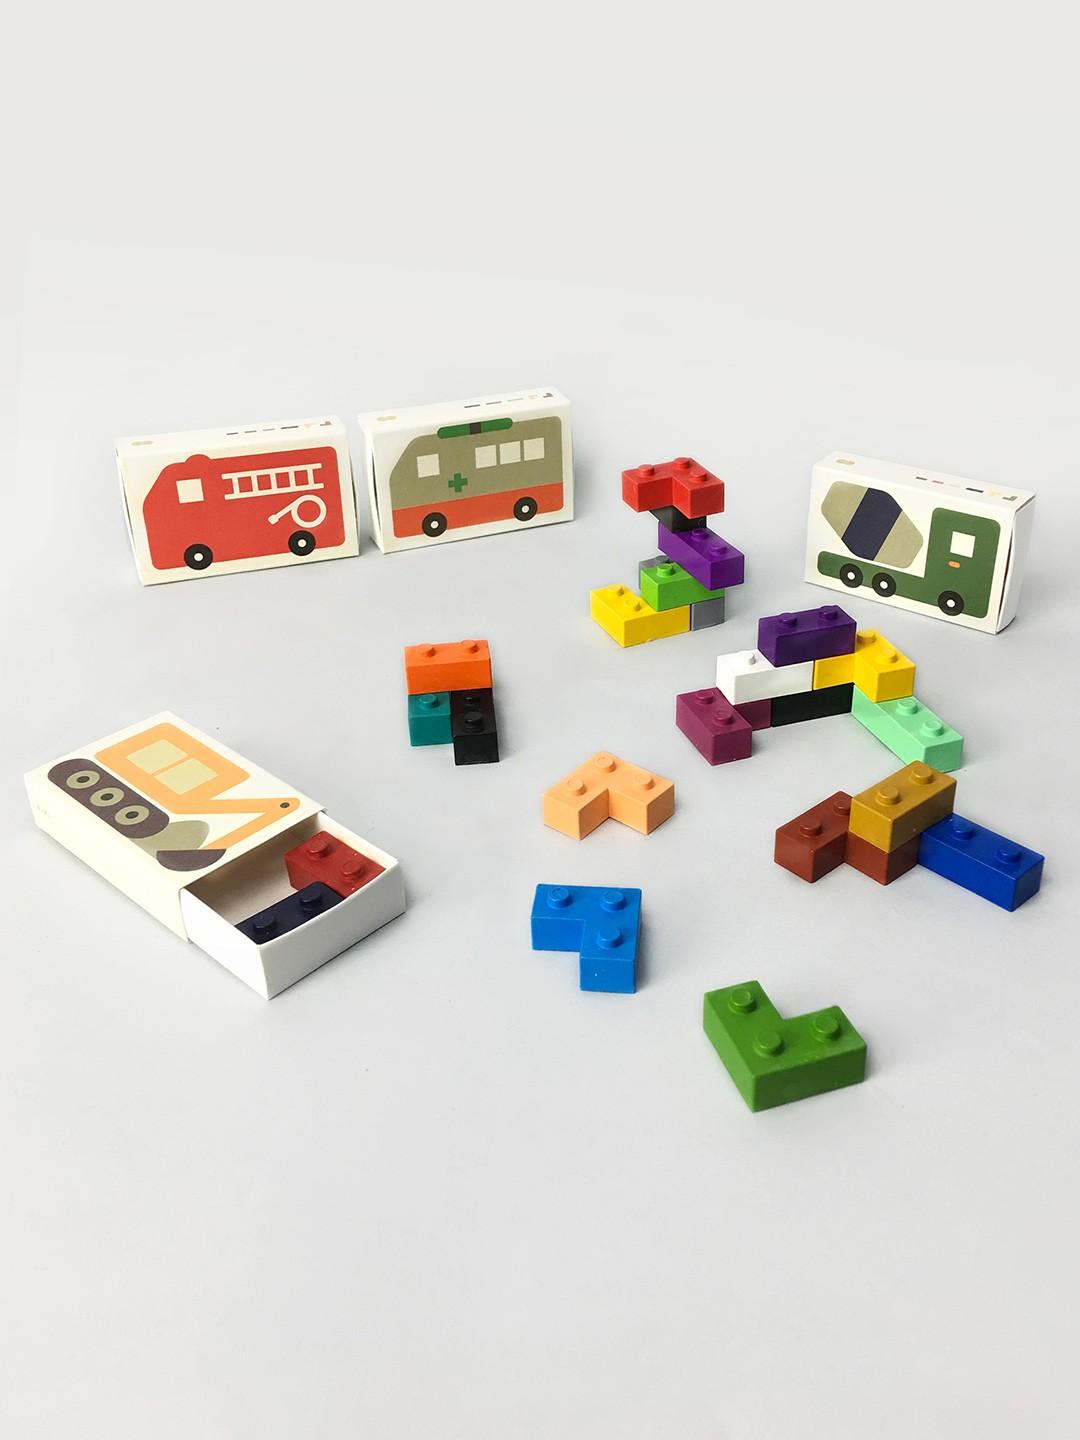 Wasco's Pocket Lego Cars